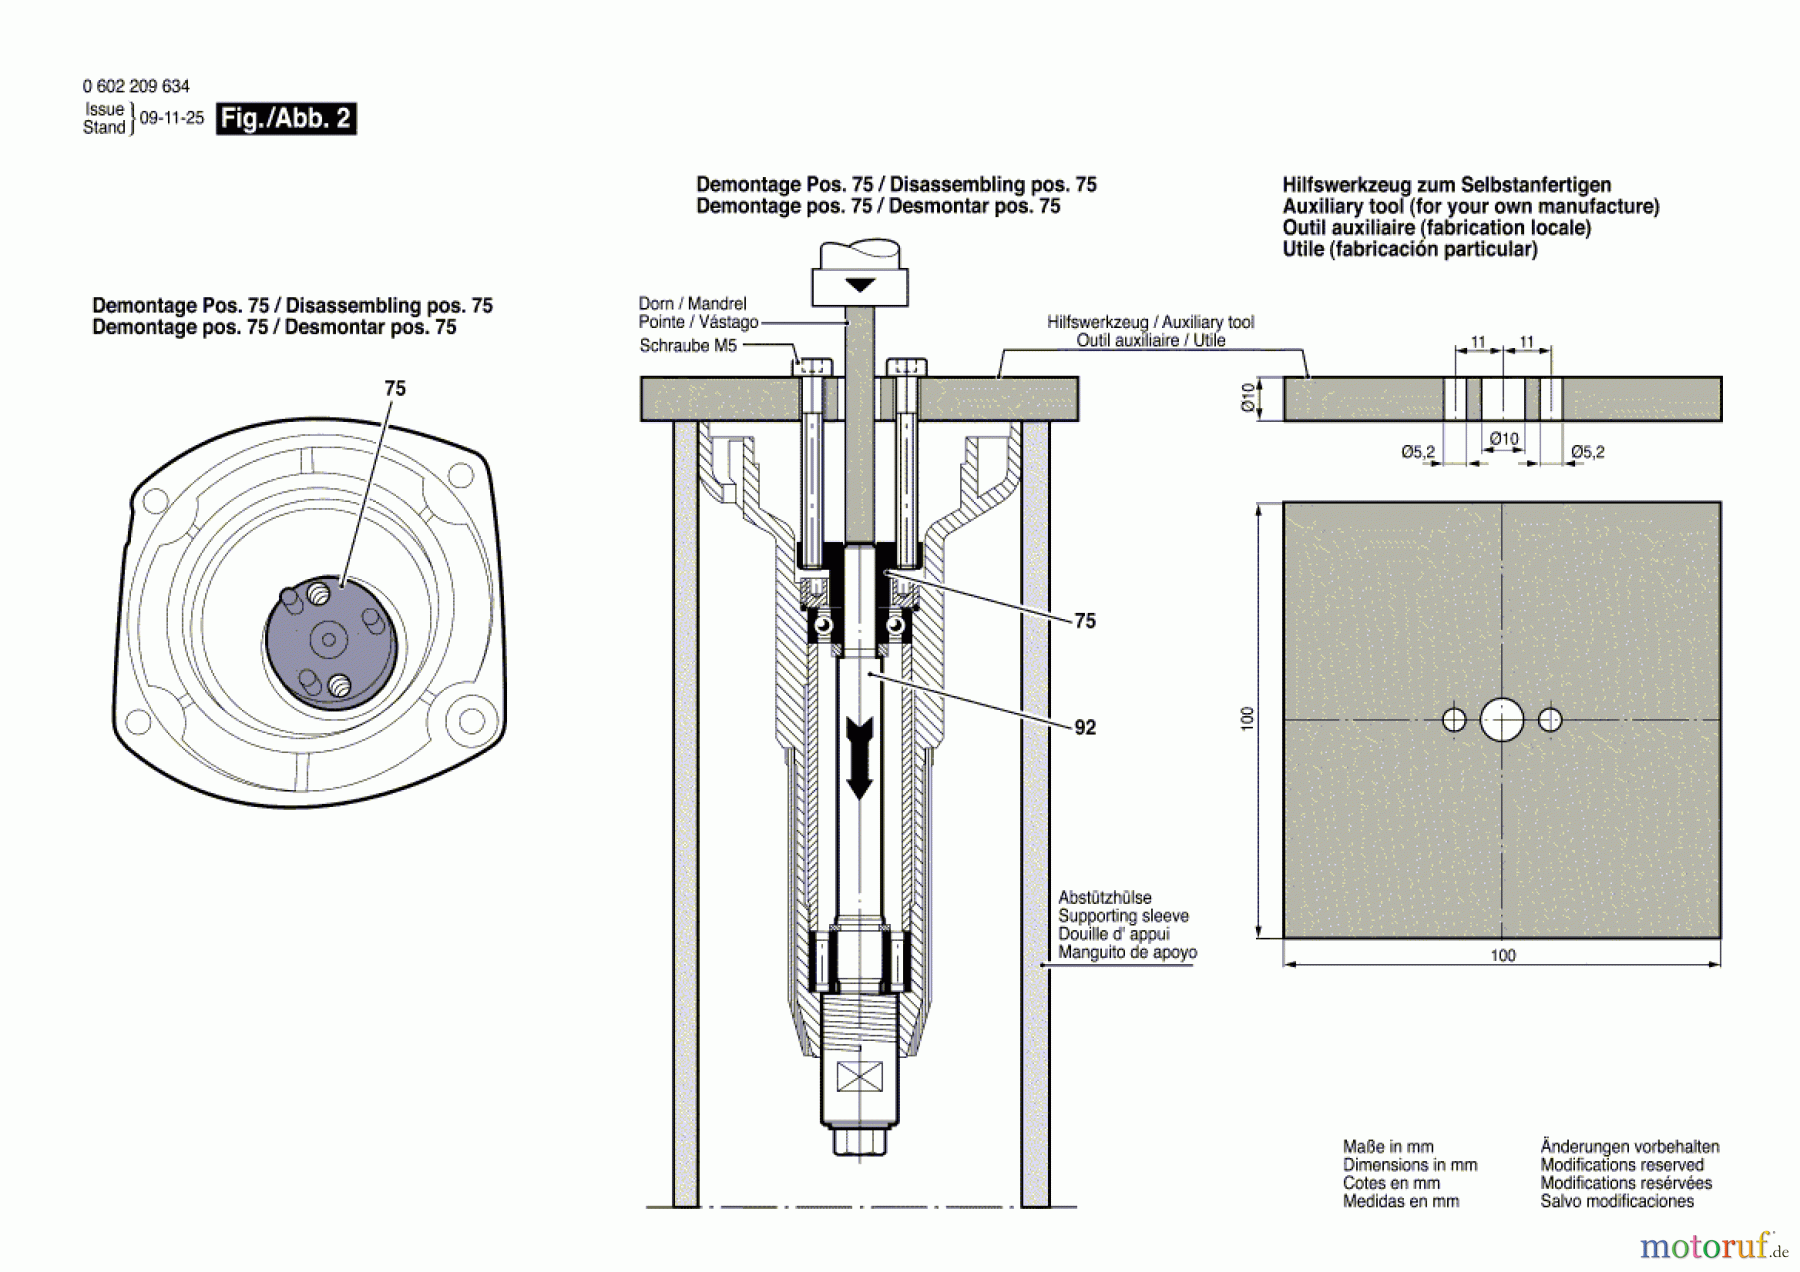  Bosch Werkzeug Geradschleifer HGS 65/50 Seite 2